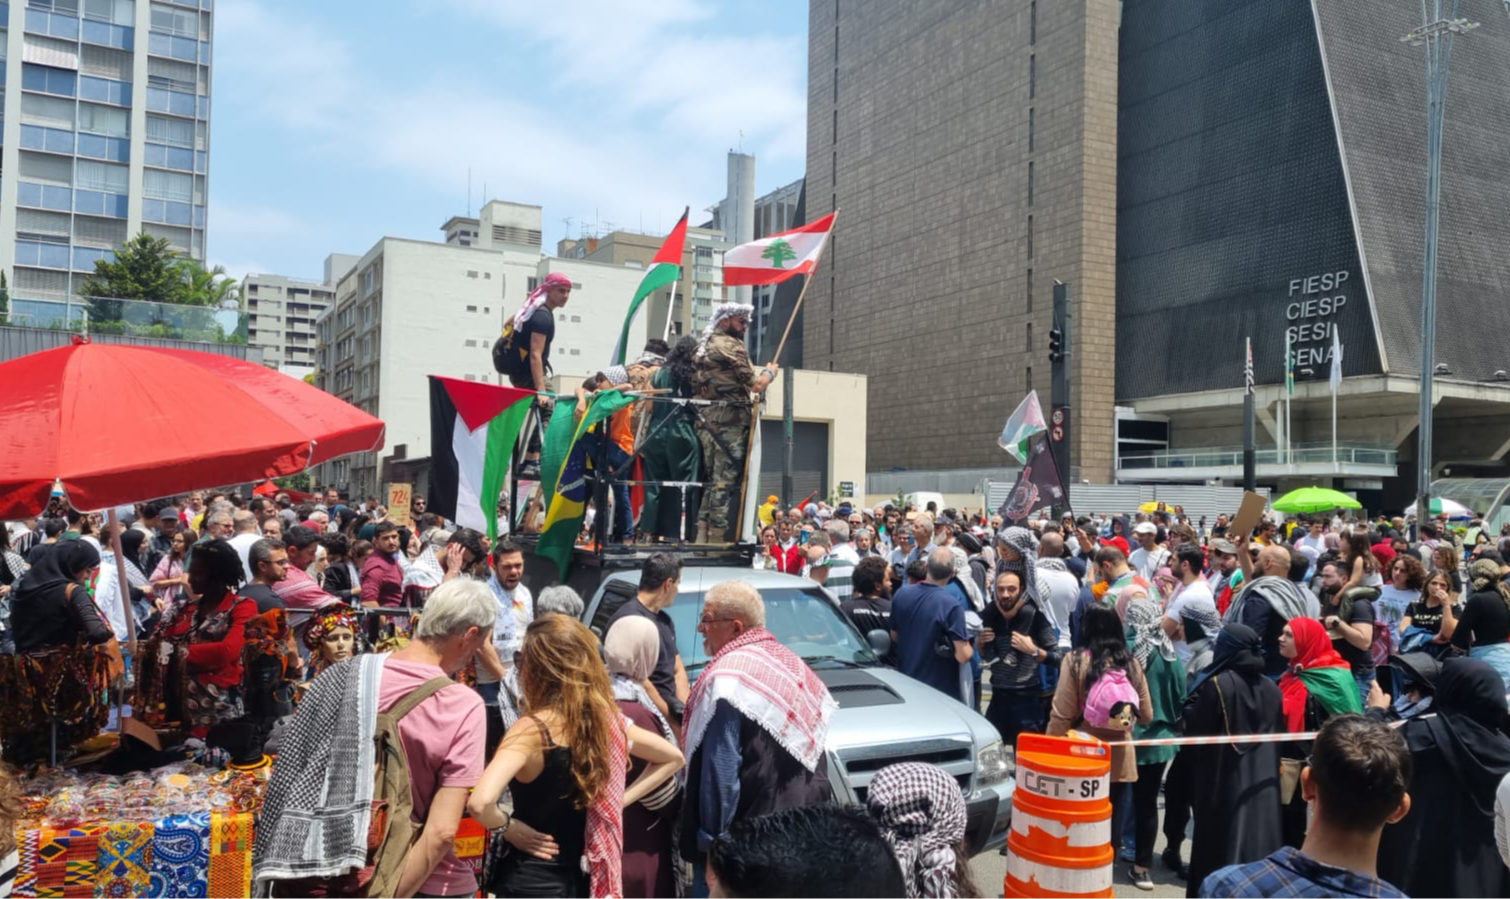 Na capital paulista, a prefeitura suspendeu o programa que mantém a Avenida Paulista aberta, local que terá ato convocado pela Frente Palestina São Paulo